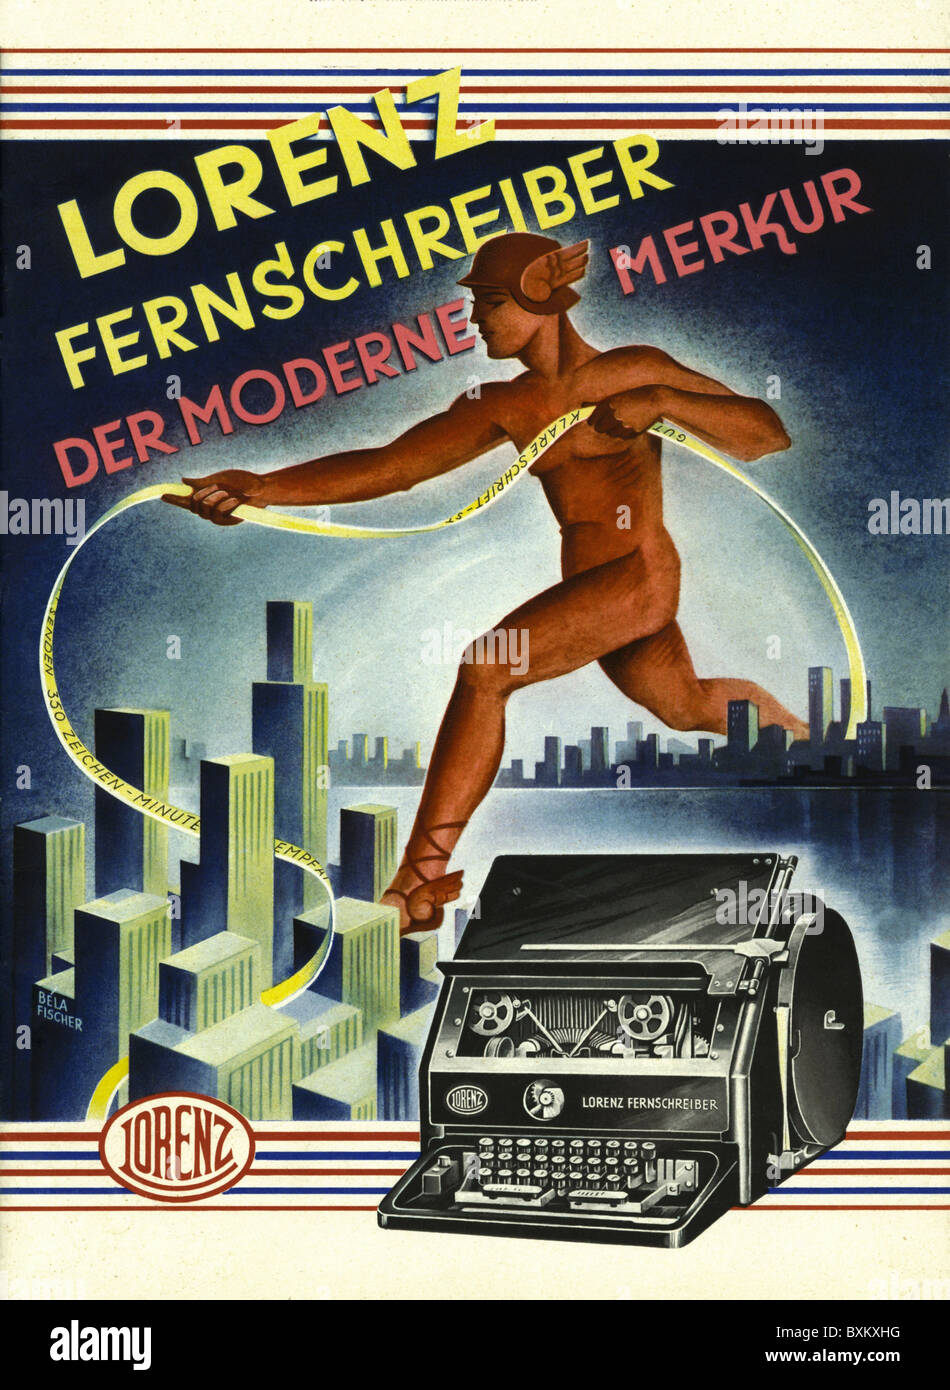 Publicité, matériel de bureau, téléimprimeur, Lorenz Company, illustration, Dresde, Allemagne, 1929, droits additionnels-Clearences-non disponible Banque D'Images